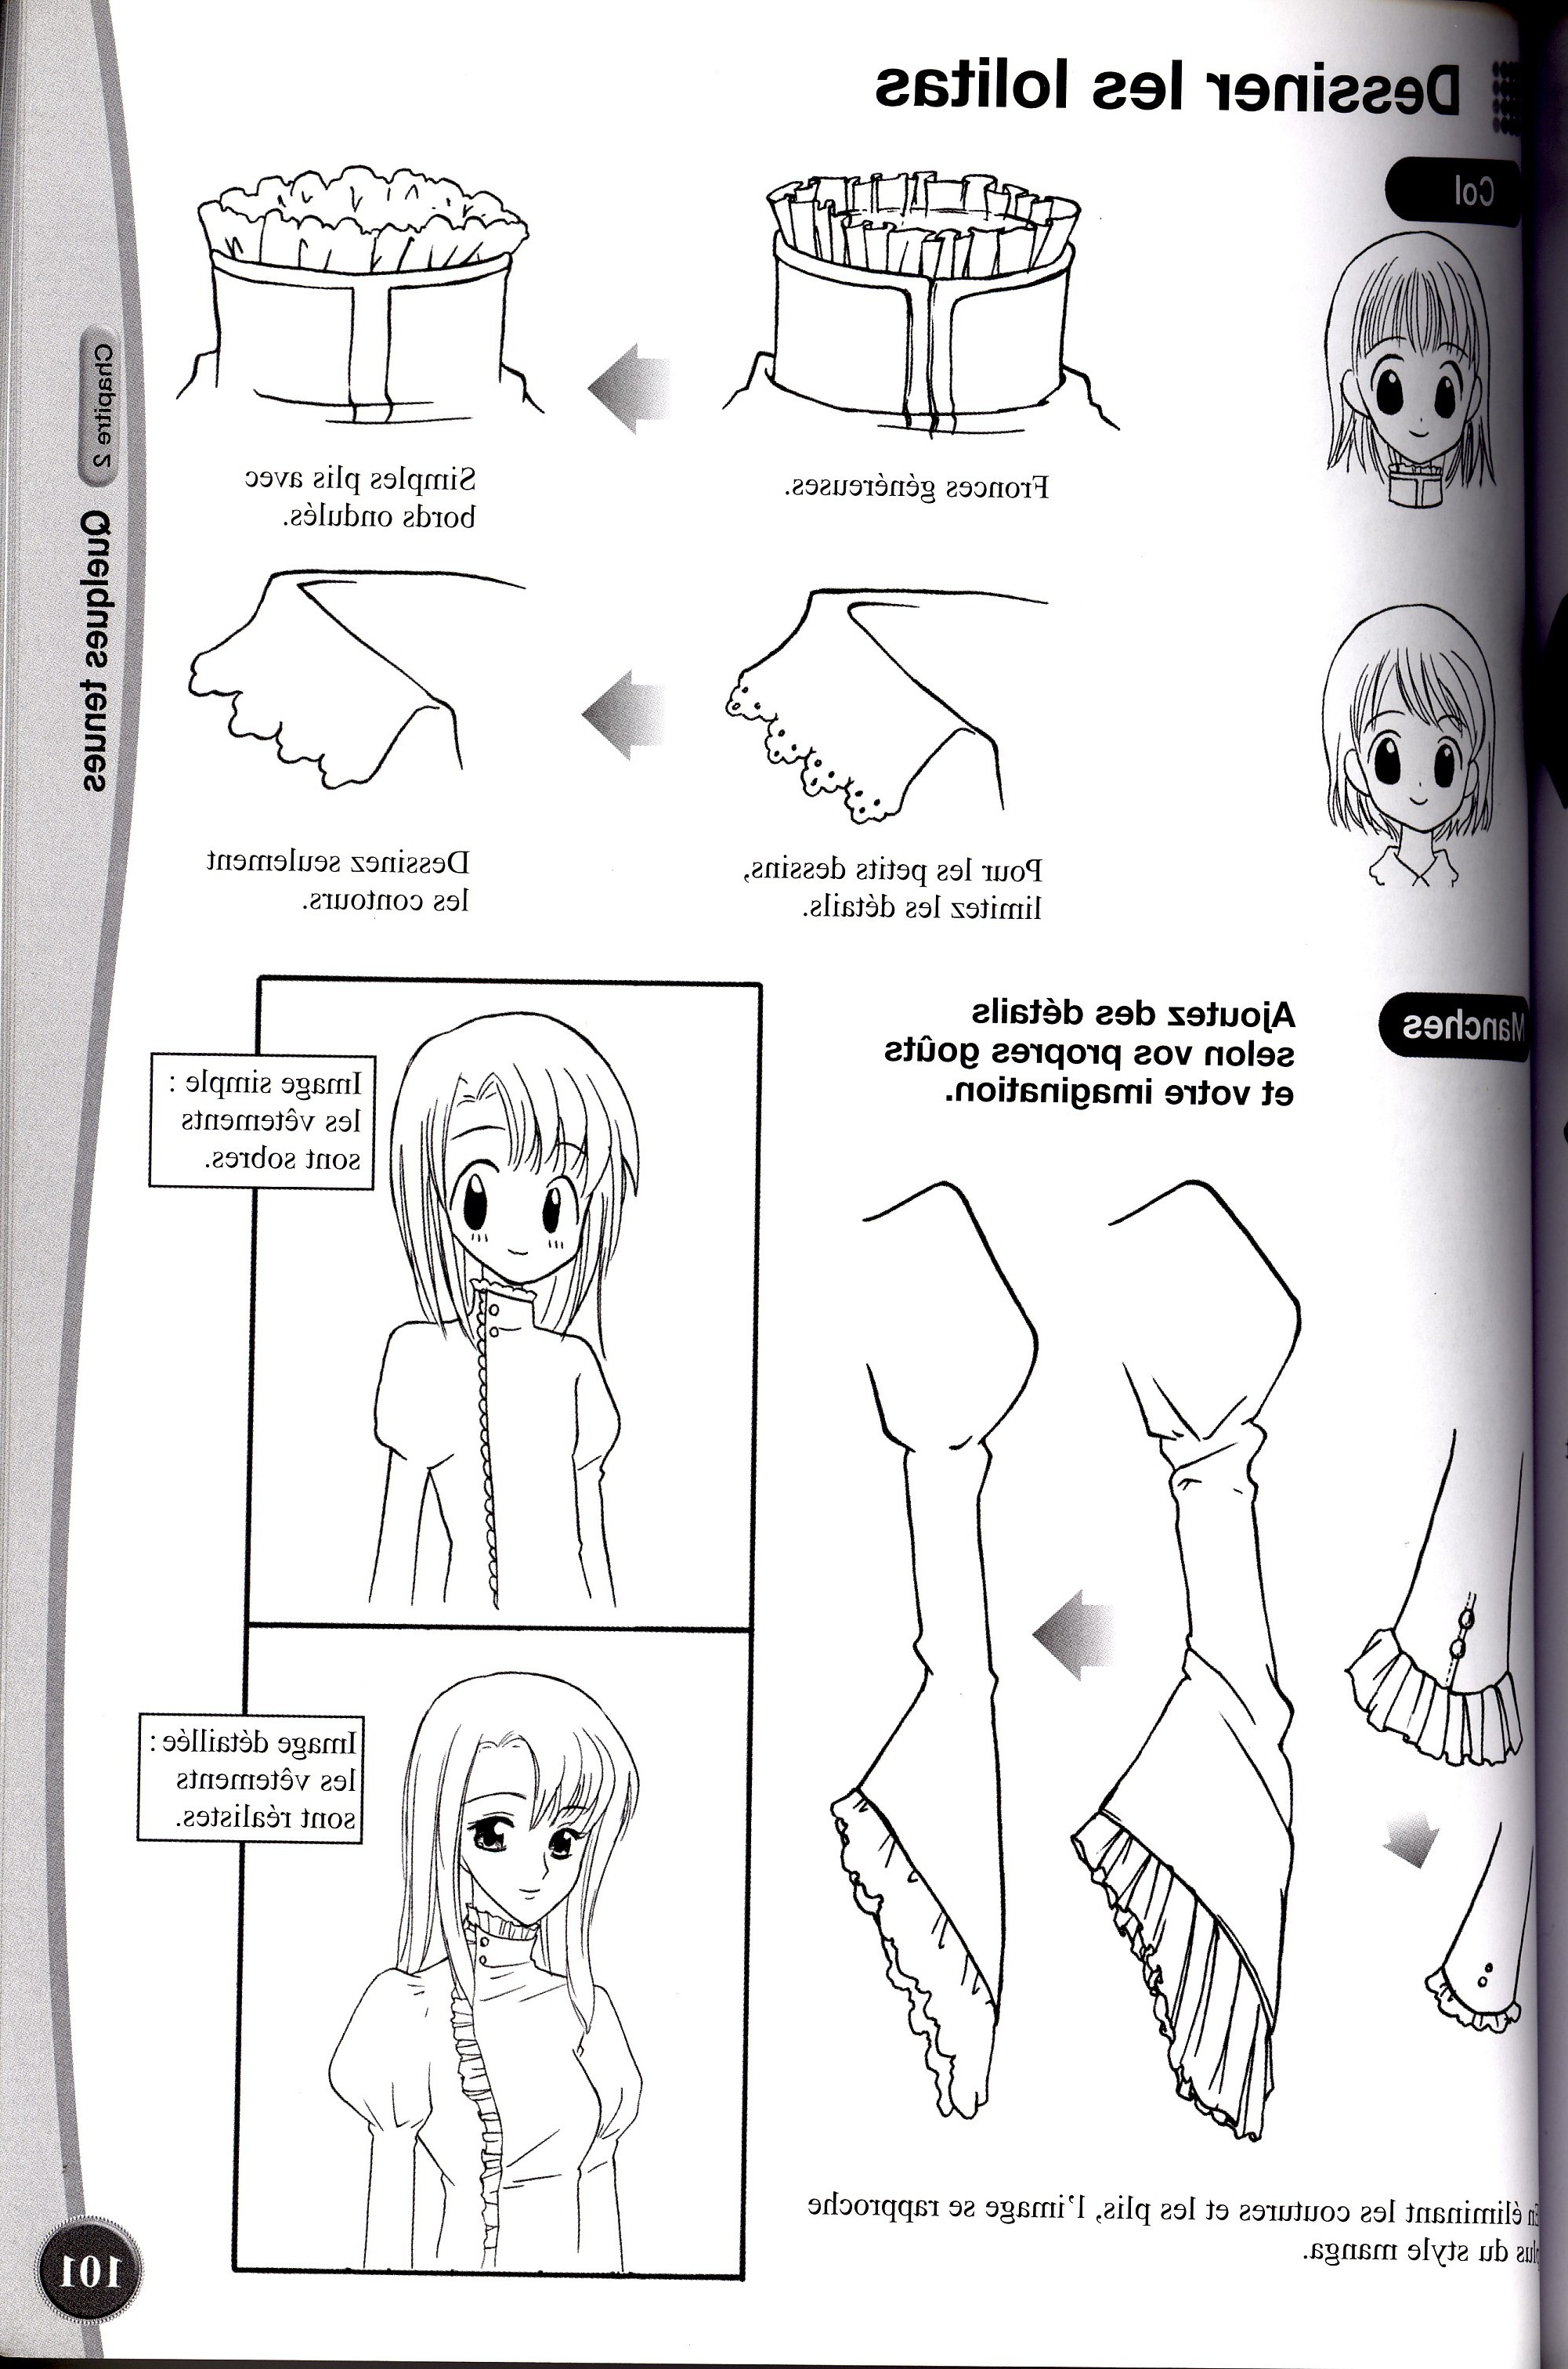 Image De Manga A Dessiner Élégant Photos Ment Dessiner Des Mangas Manga